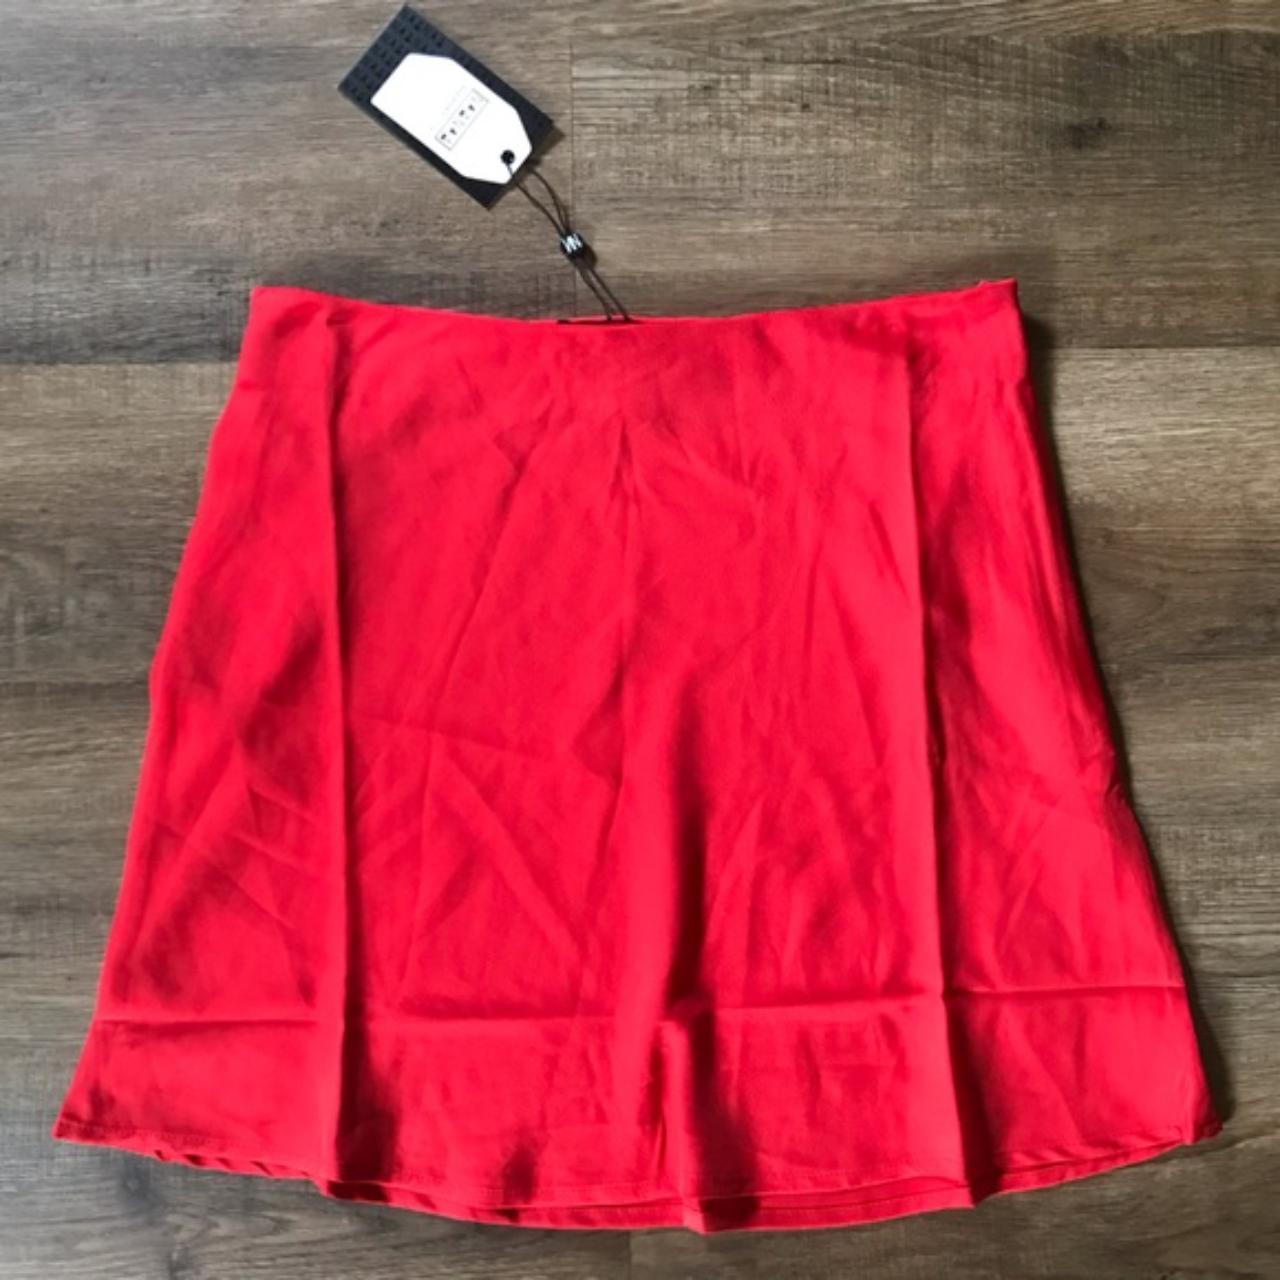 NaaNaa Women's Red Skirt